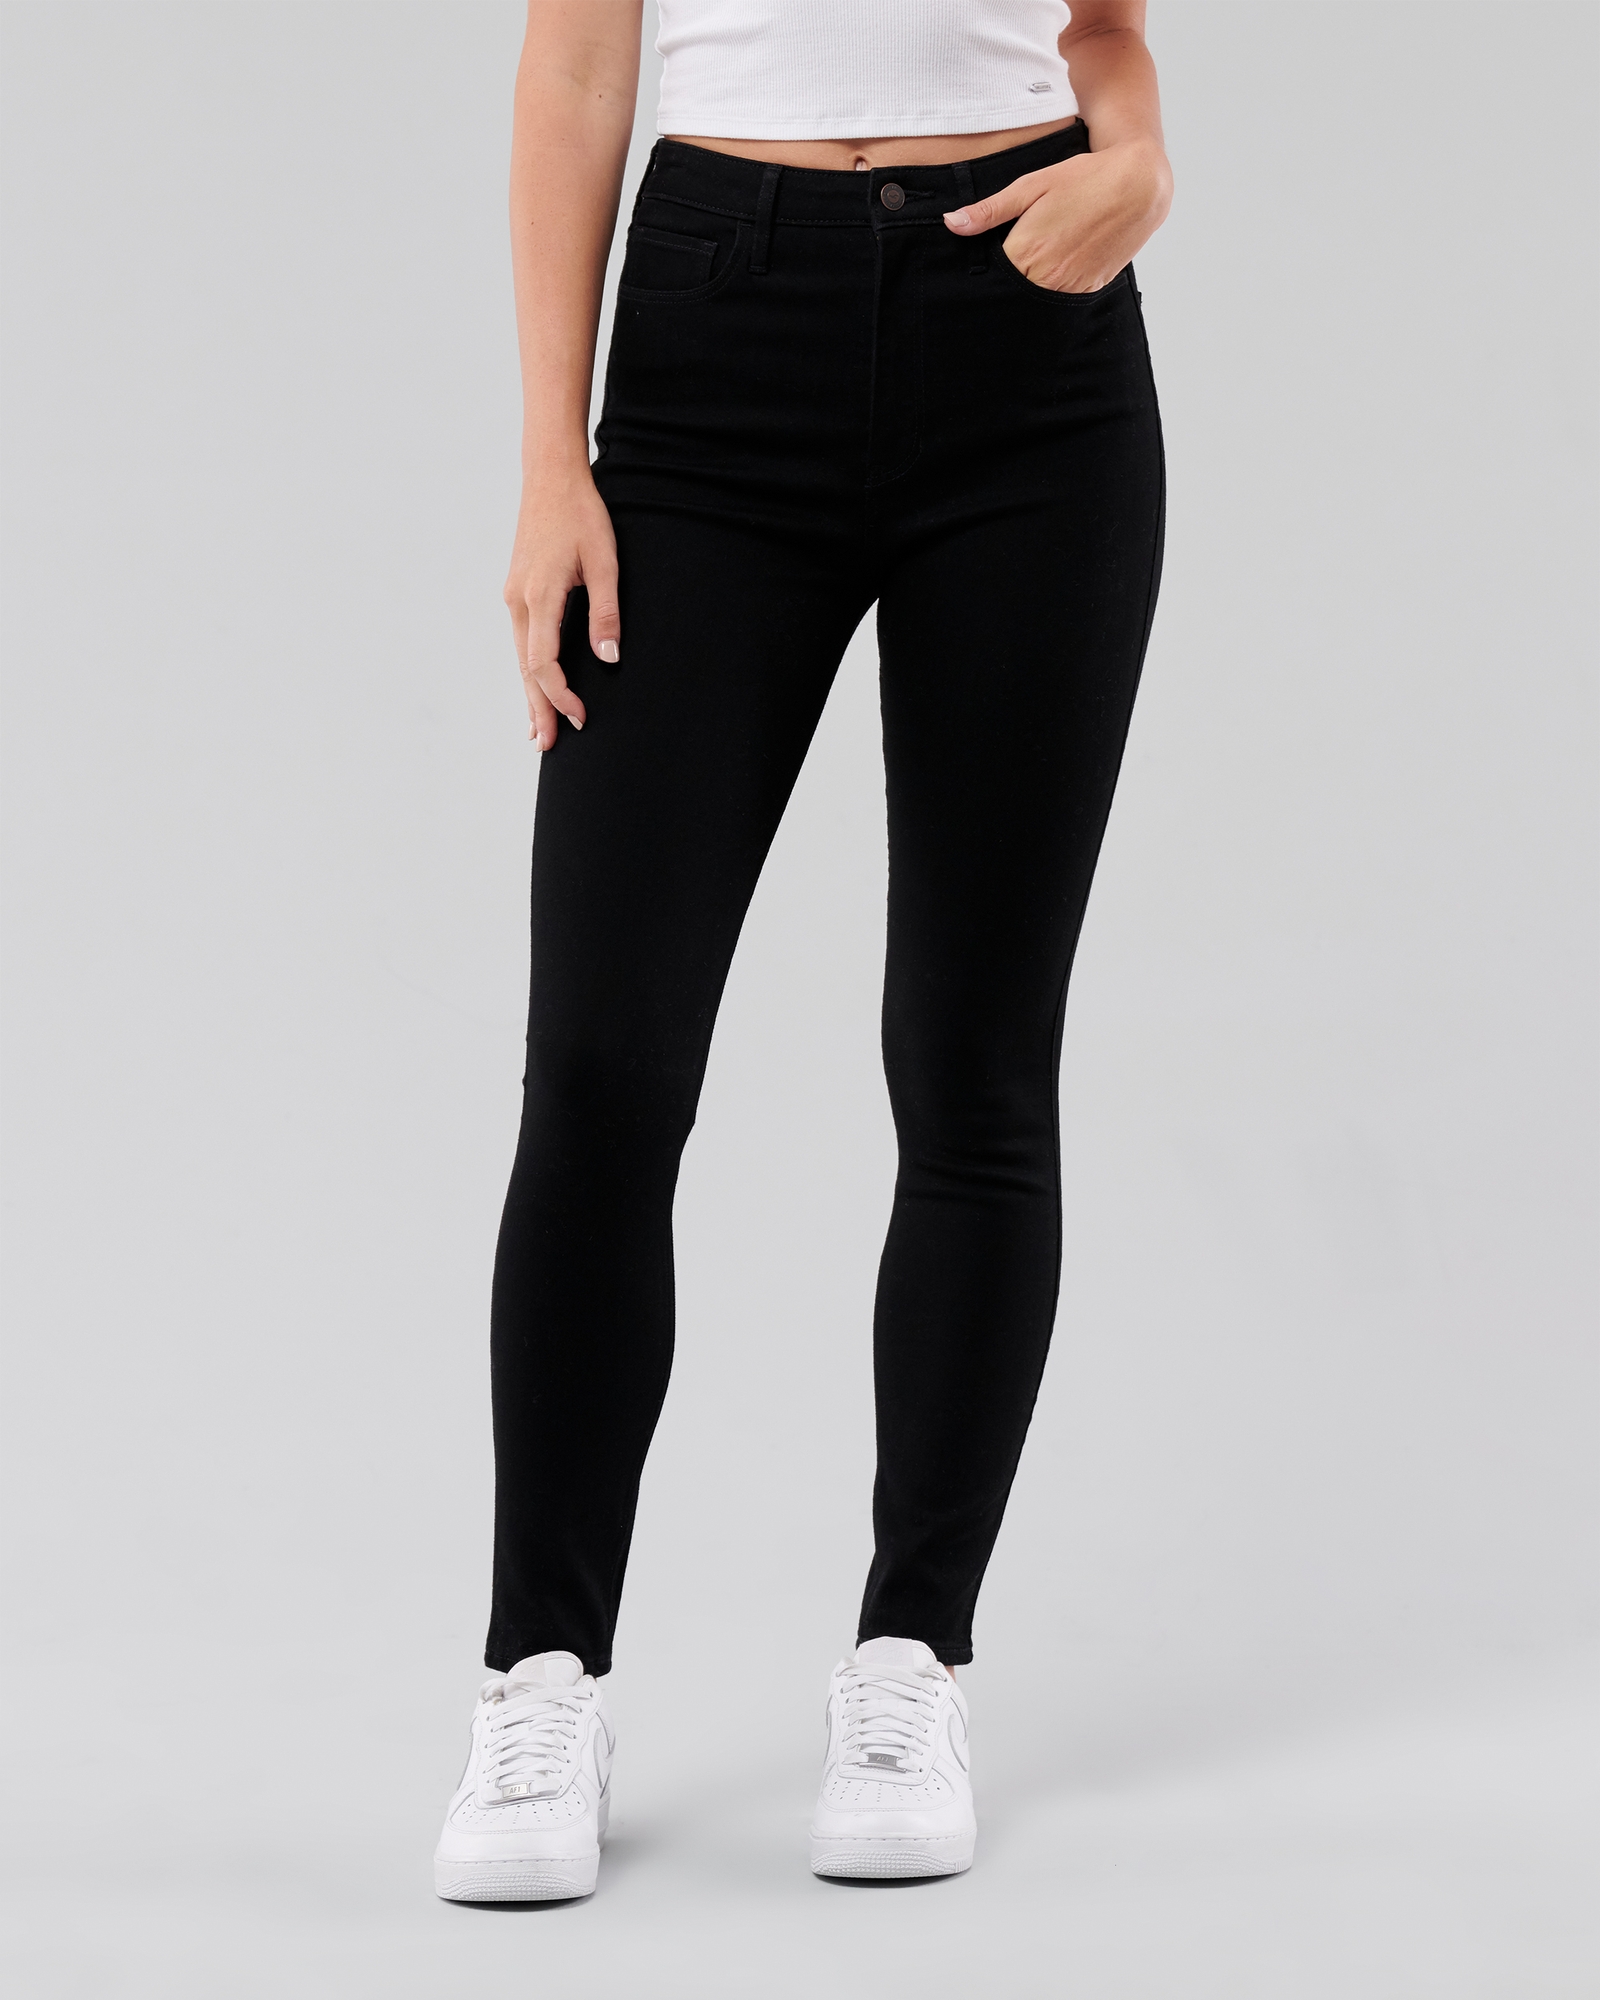 Spring Summer High Waist Slim Skinny Jeans (Color:Black Size:30), snatcher